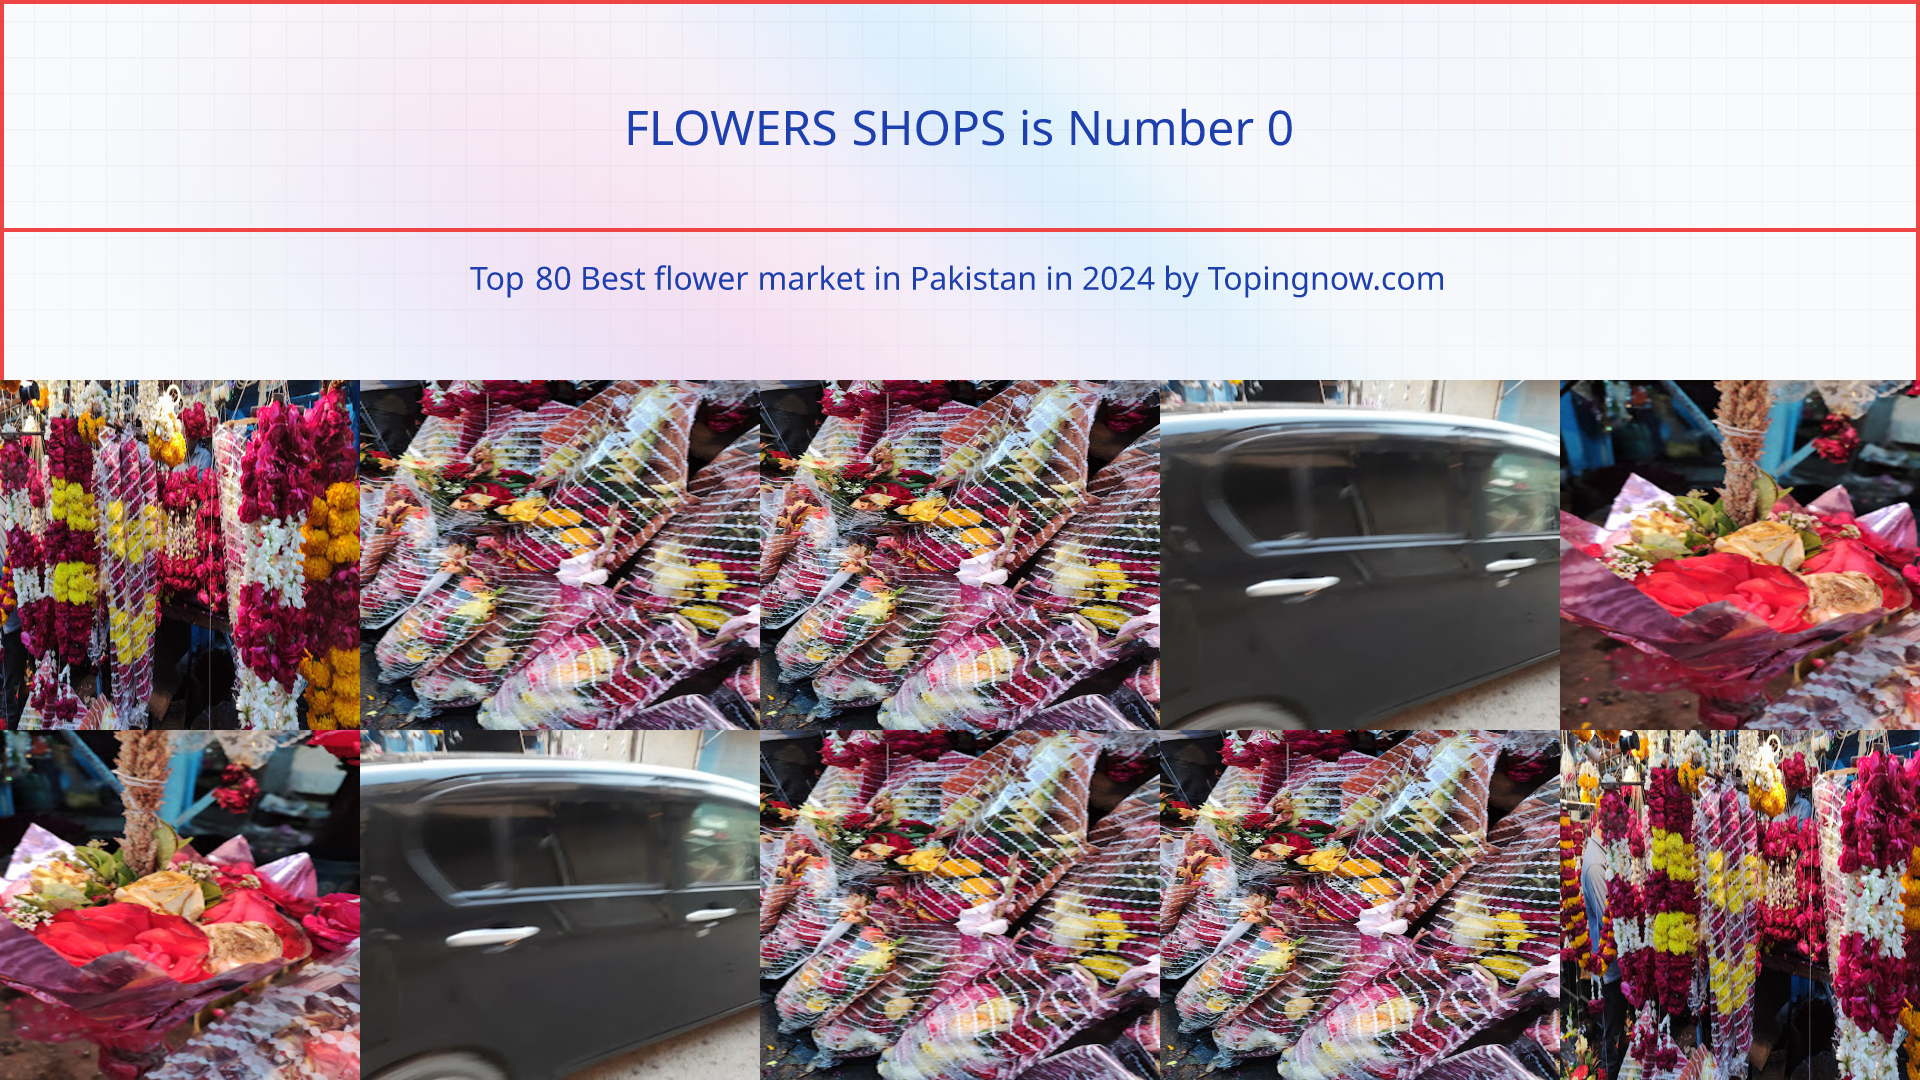 FLOWERS SHOPS: Top 80 Best flower market in Pakistan in 2024